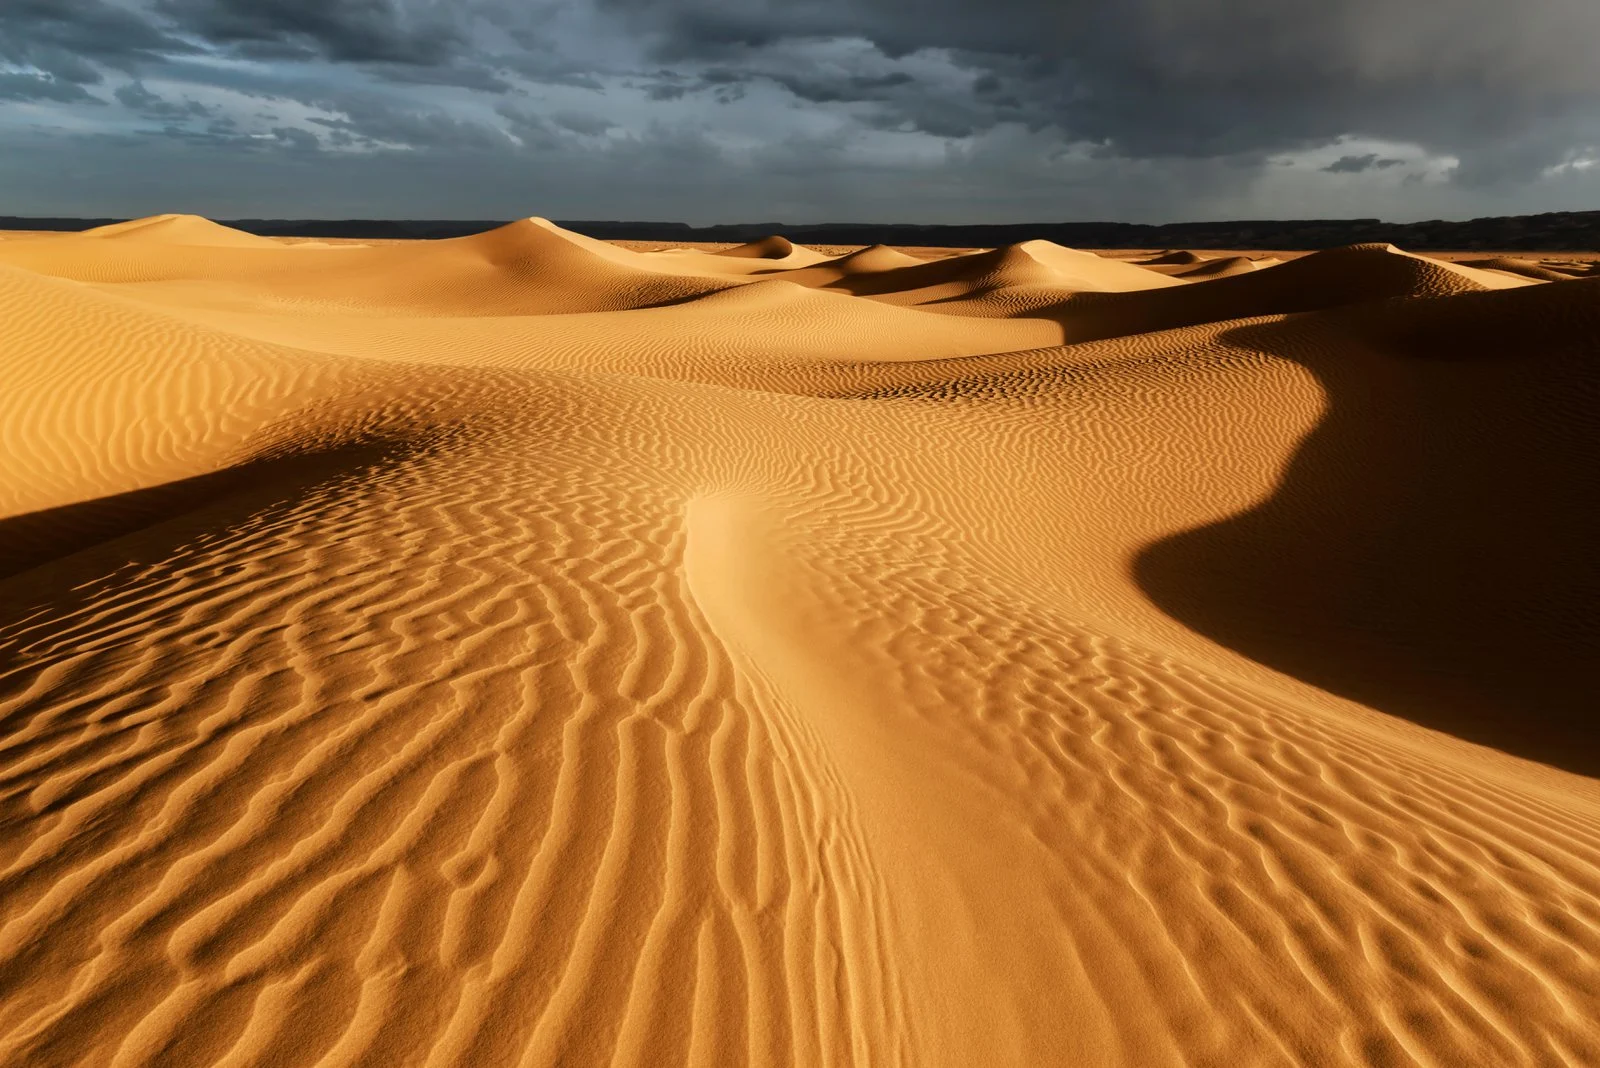 تفسير حلم الصحراء